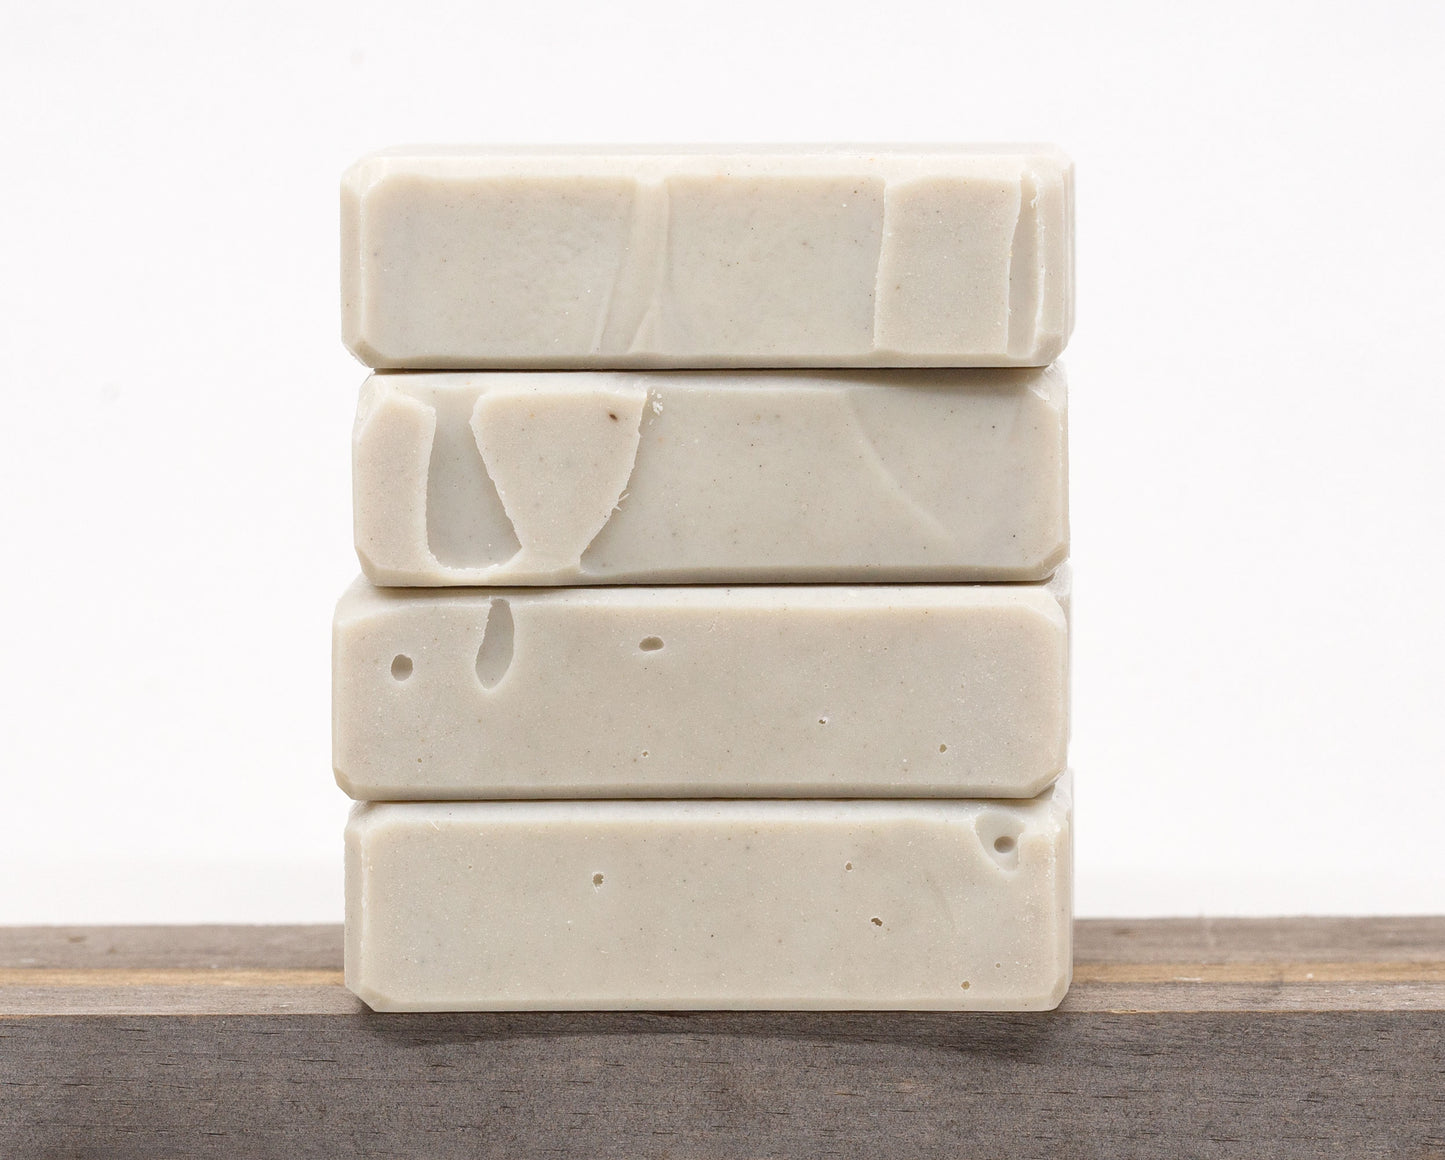 Bentonite Clay Soap